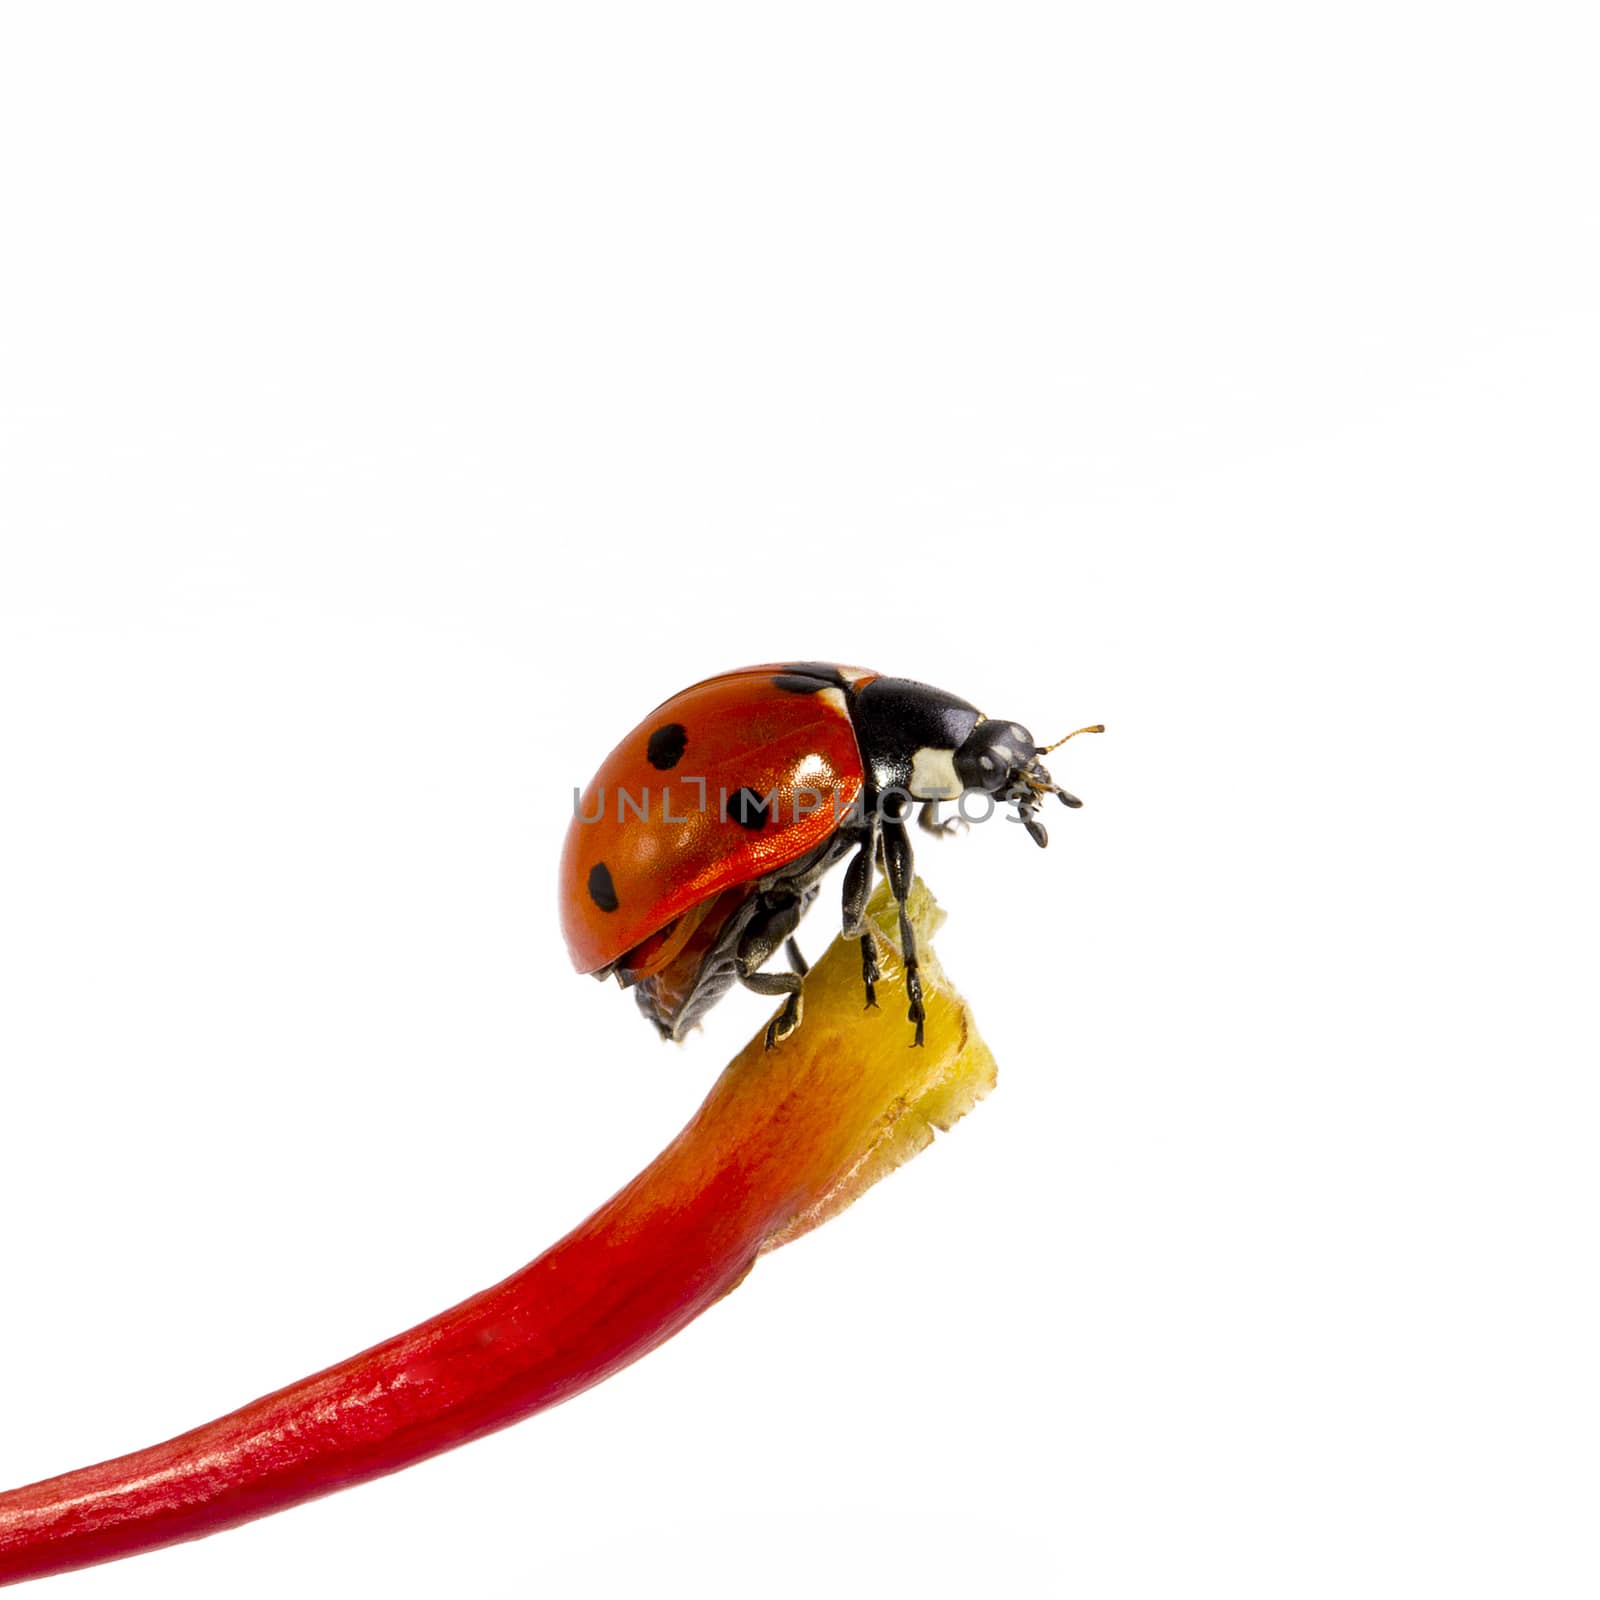 single ladybug on blade isolated on white background by mychadre77